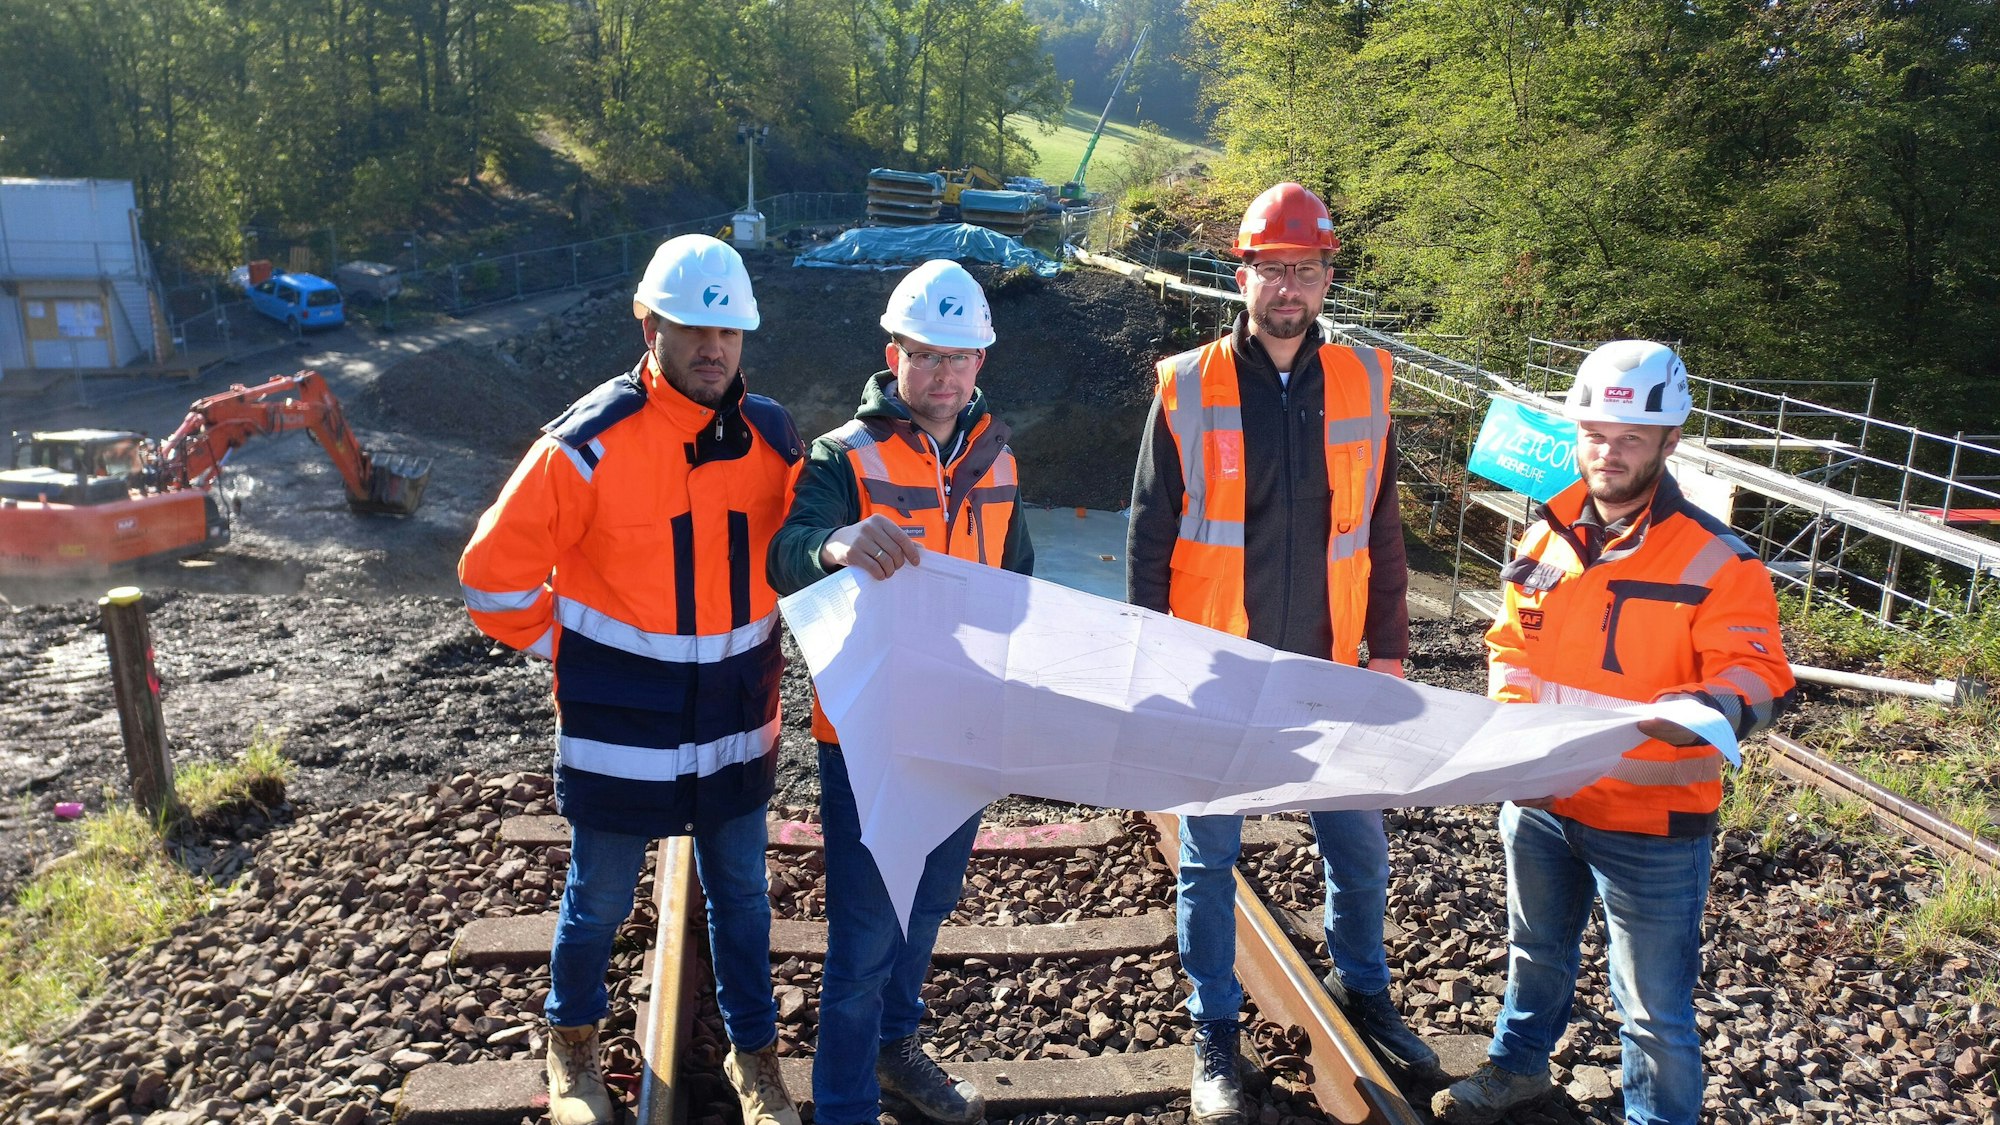 Die Verantwortlichen für die Baustelle stehen auf einem Gleis der alten Eisenbahnbrücke in Gummersbach Luttersiefen. Zu sehen sind Bauleiter Lars Maßing (KAF Falkenhahn), Daniel Barkling (DB Netz), Christopher Butenkemper und Soufiane Razzouk (beide Bauüberwachung Zetcon Ingenieure).